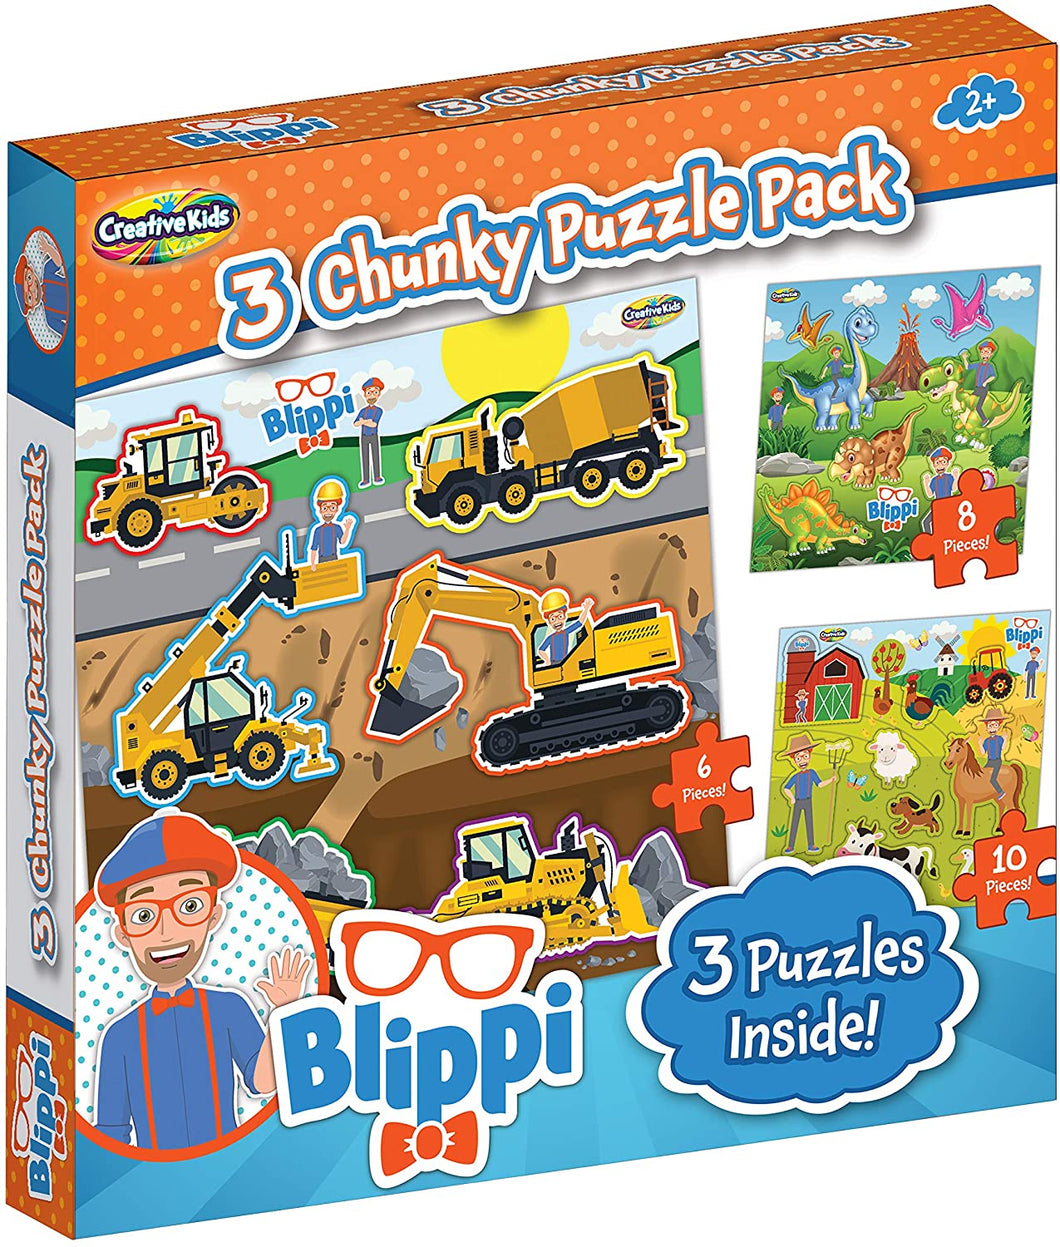 Blippi 3 Chunky Puzzle Pack